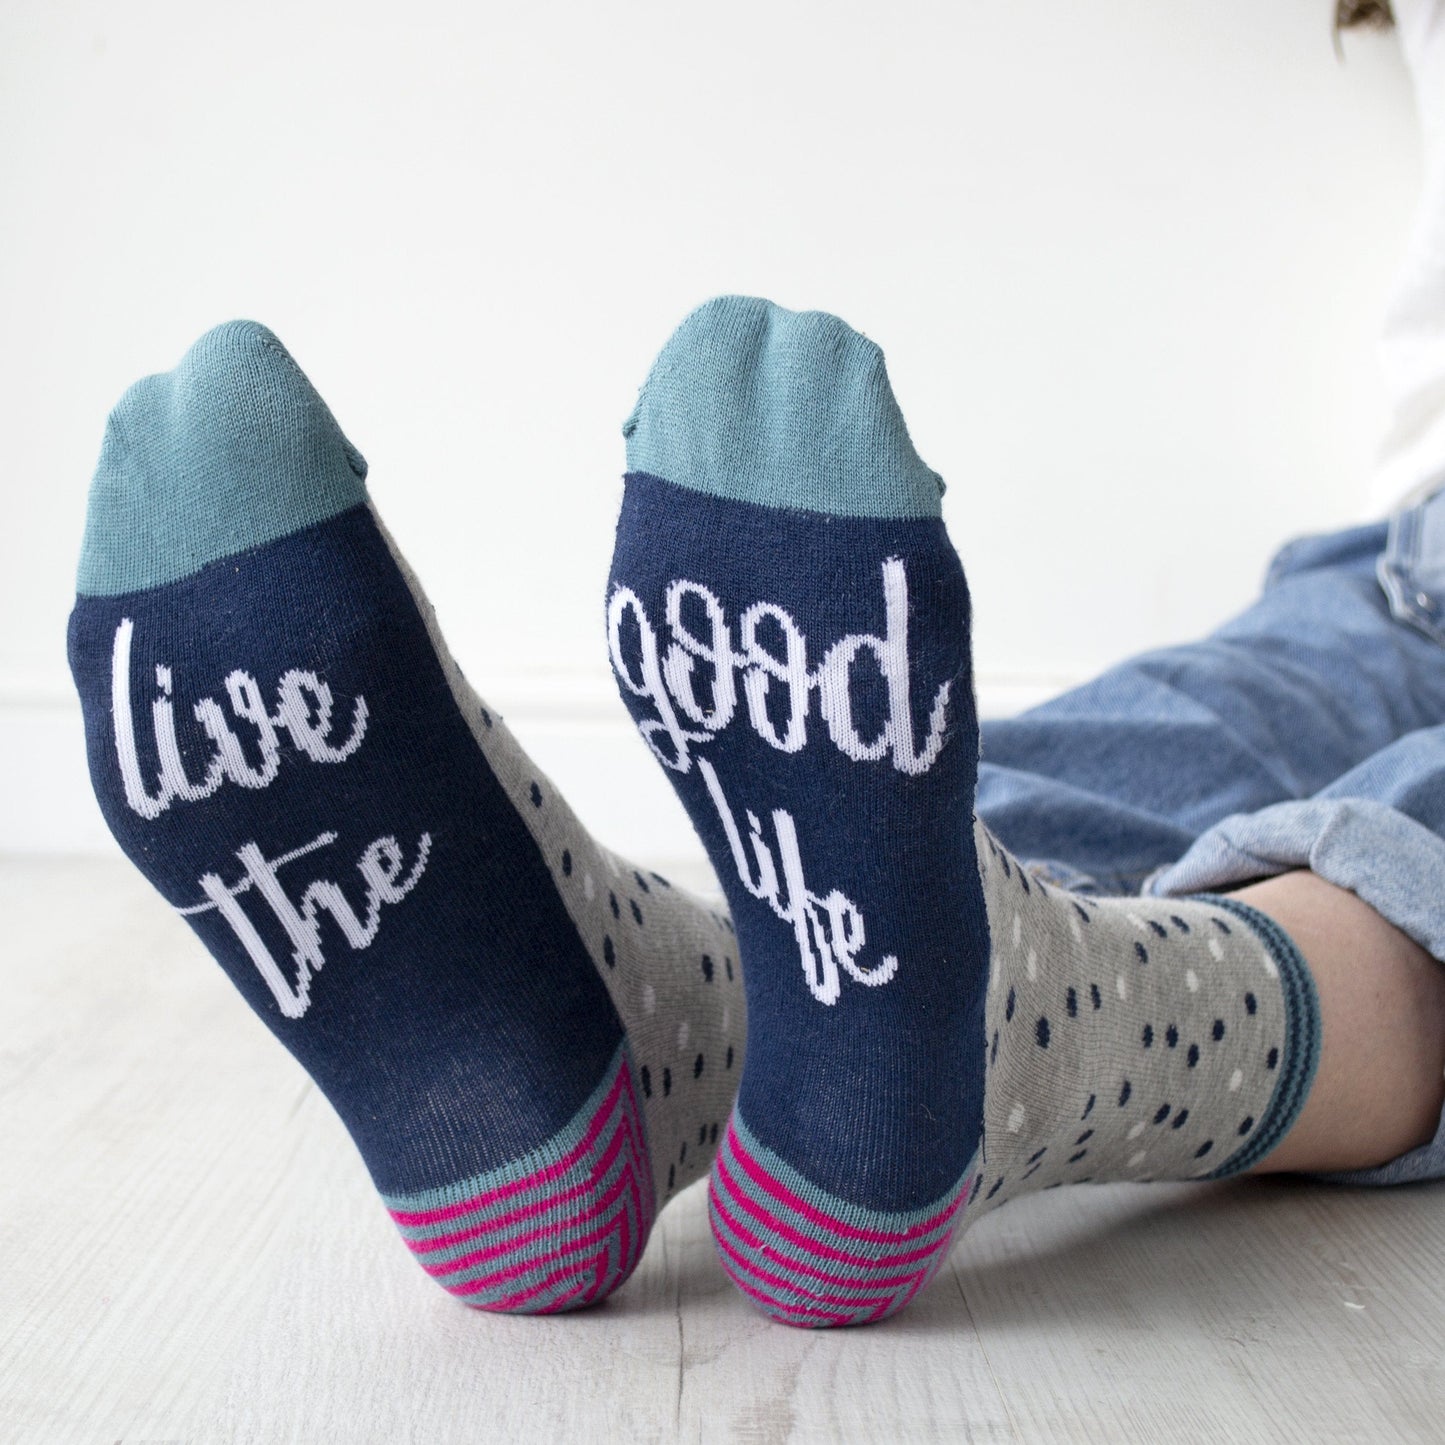 Live The Good Life Women's Slogan Gift Socks, Socks, - ALPHS 